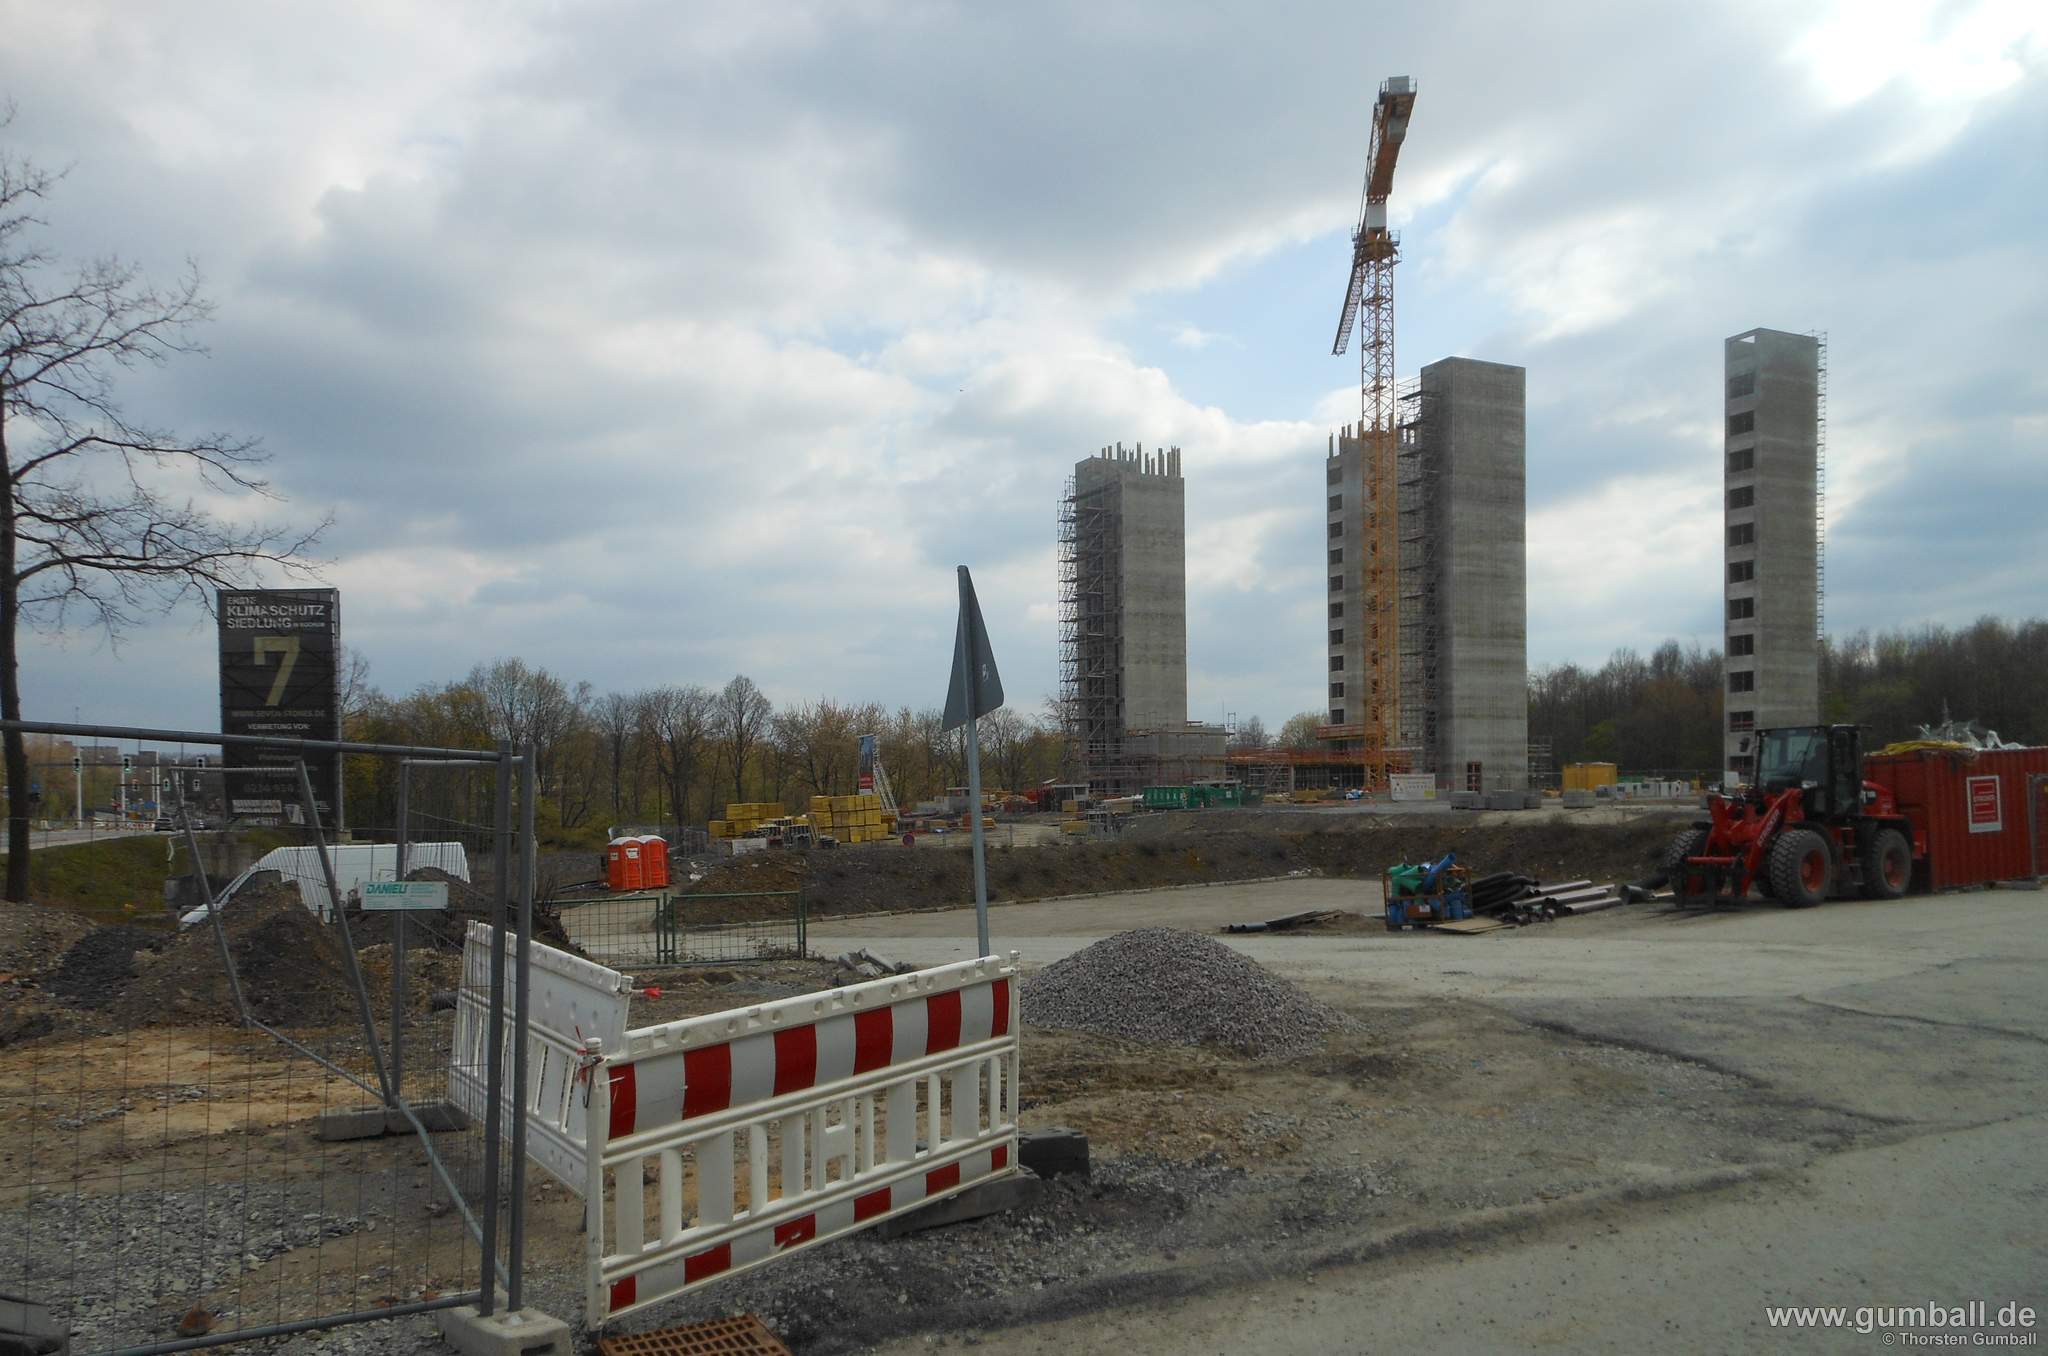 Seven Stones Baustelle, Bochum - April 2021 (17)